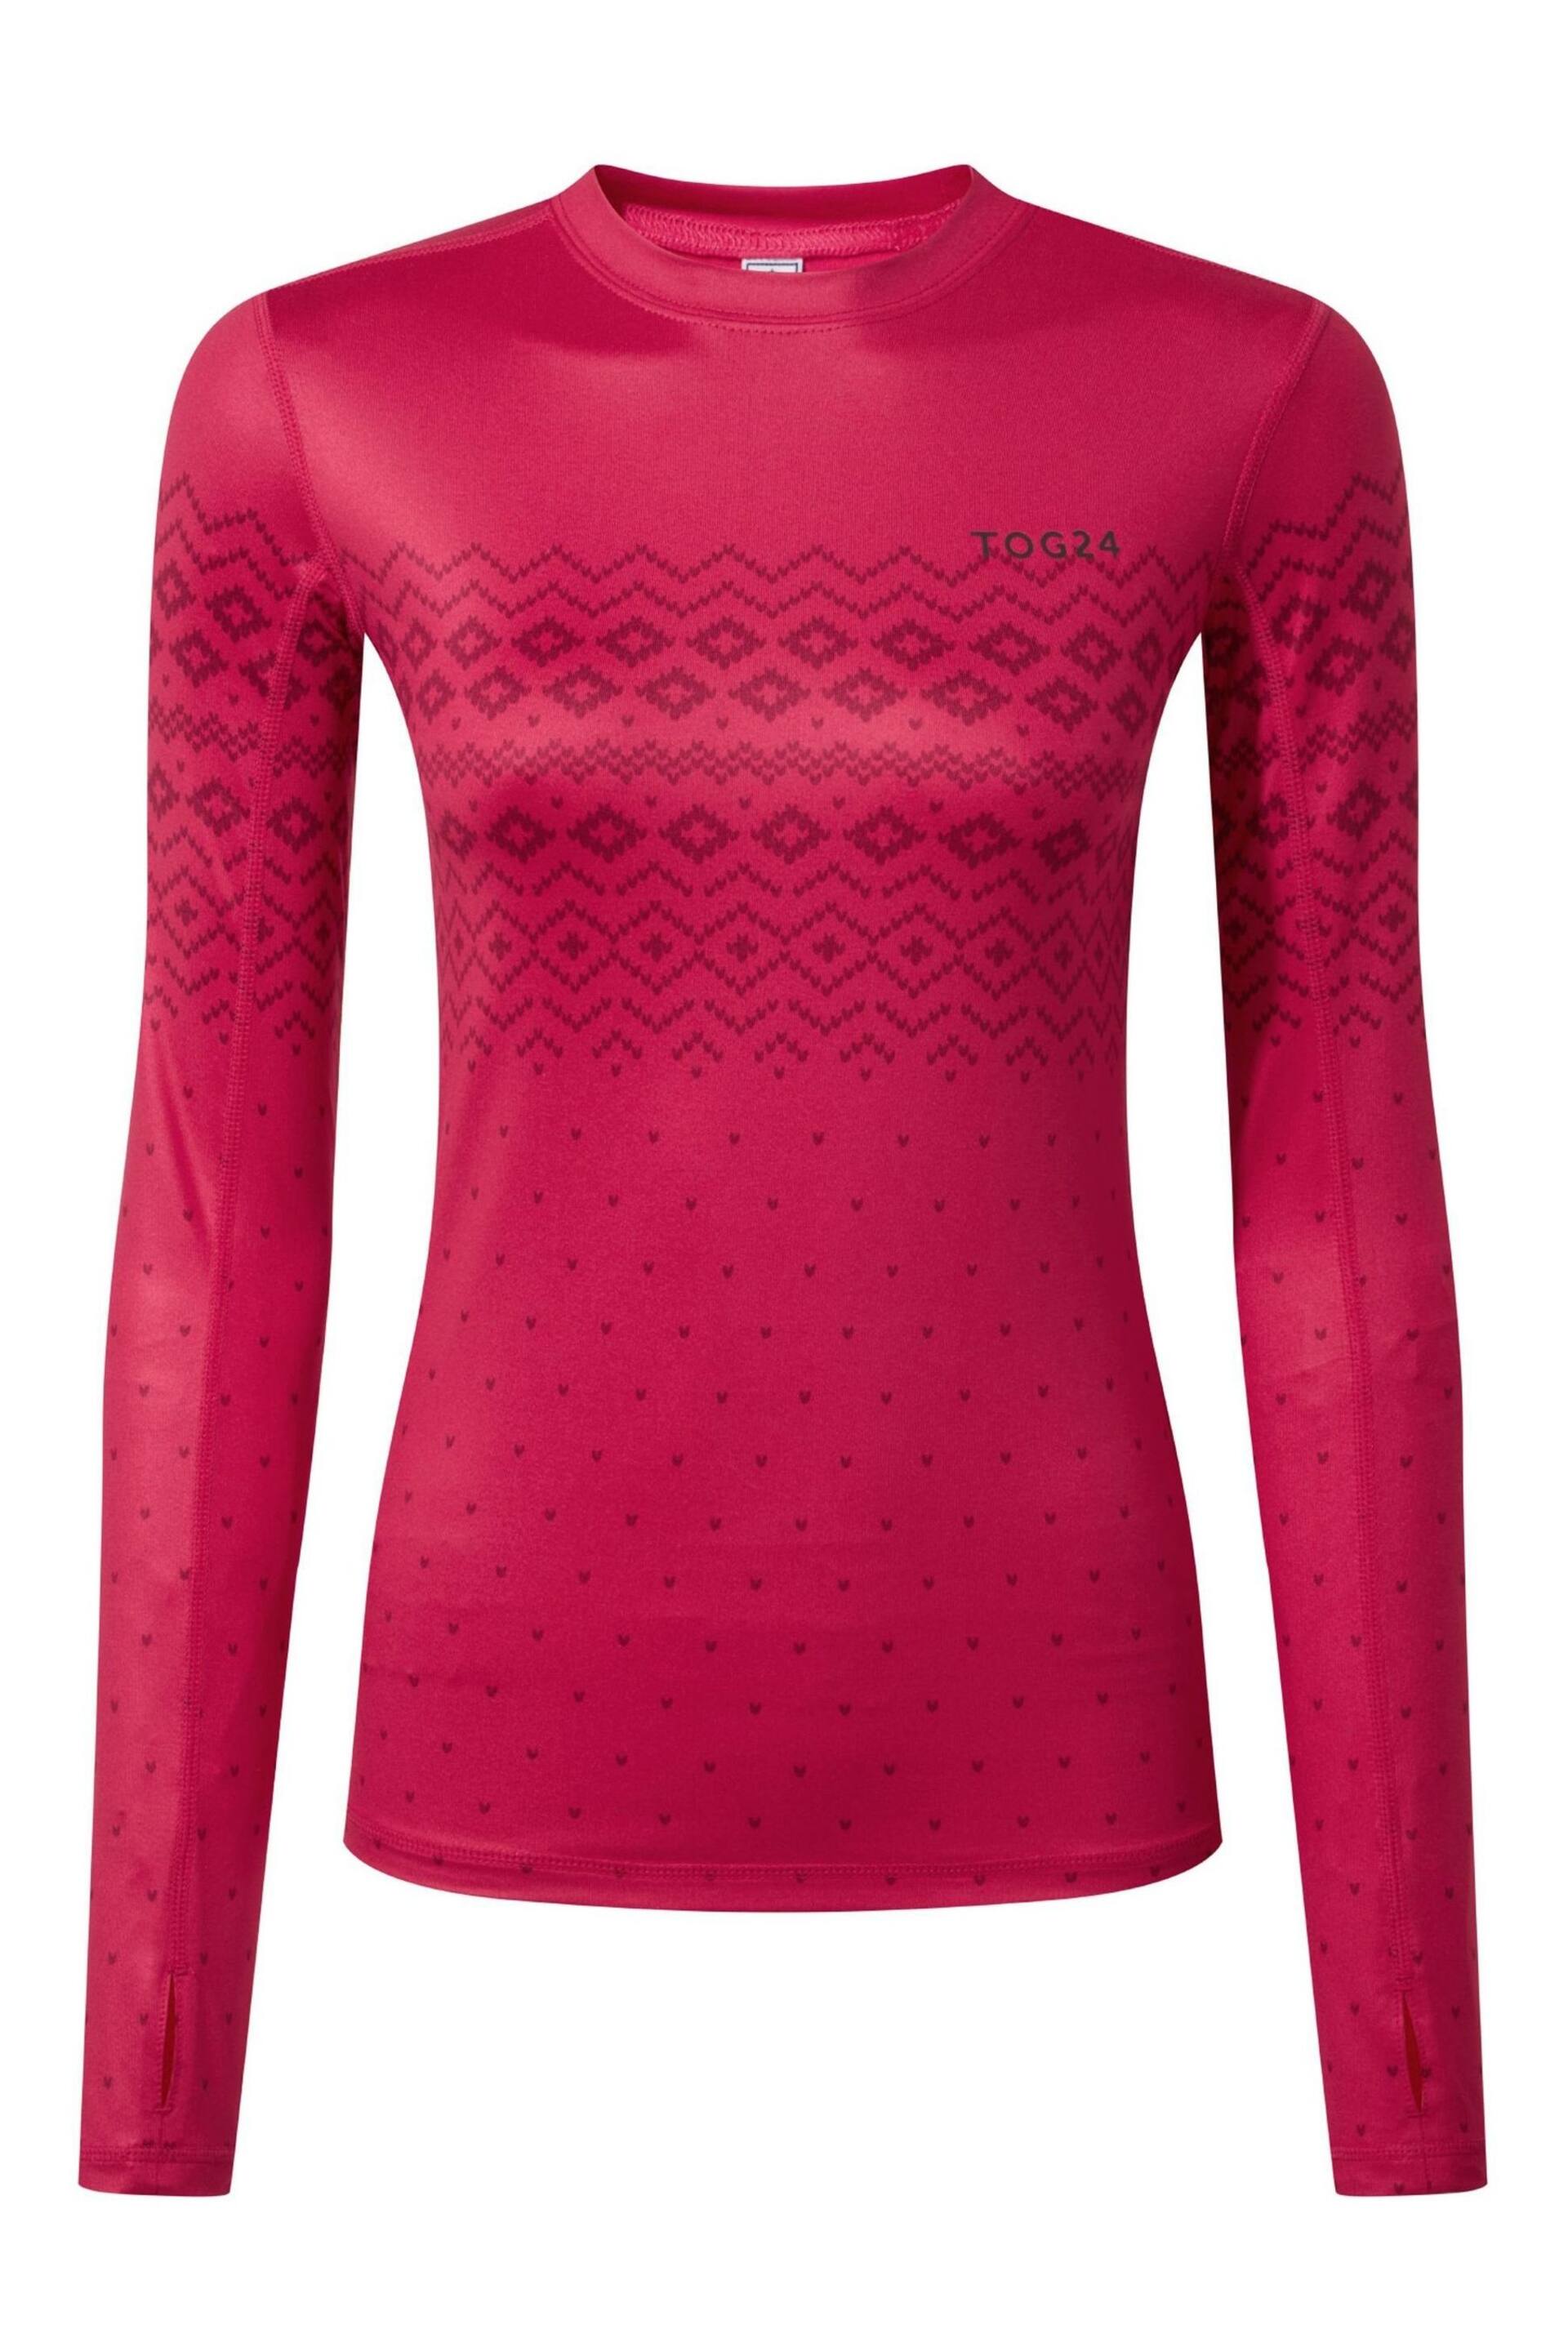 Tog 24 Pink Snowdon Thermal Zip Neck T-Shirt - Image 7 of 8